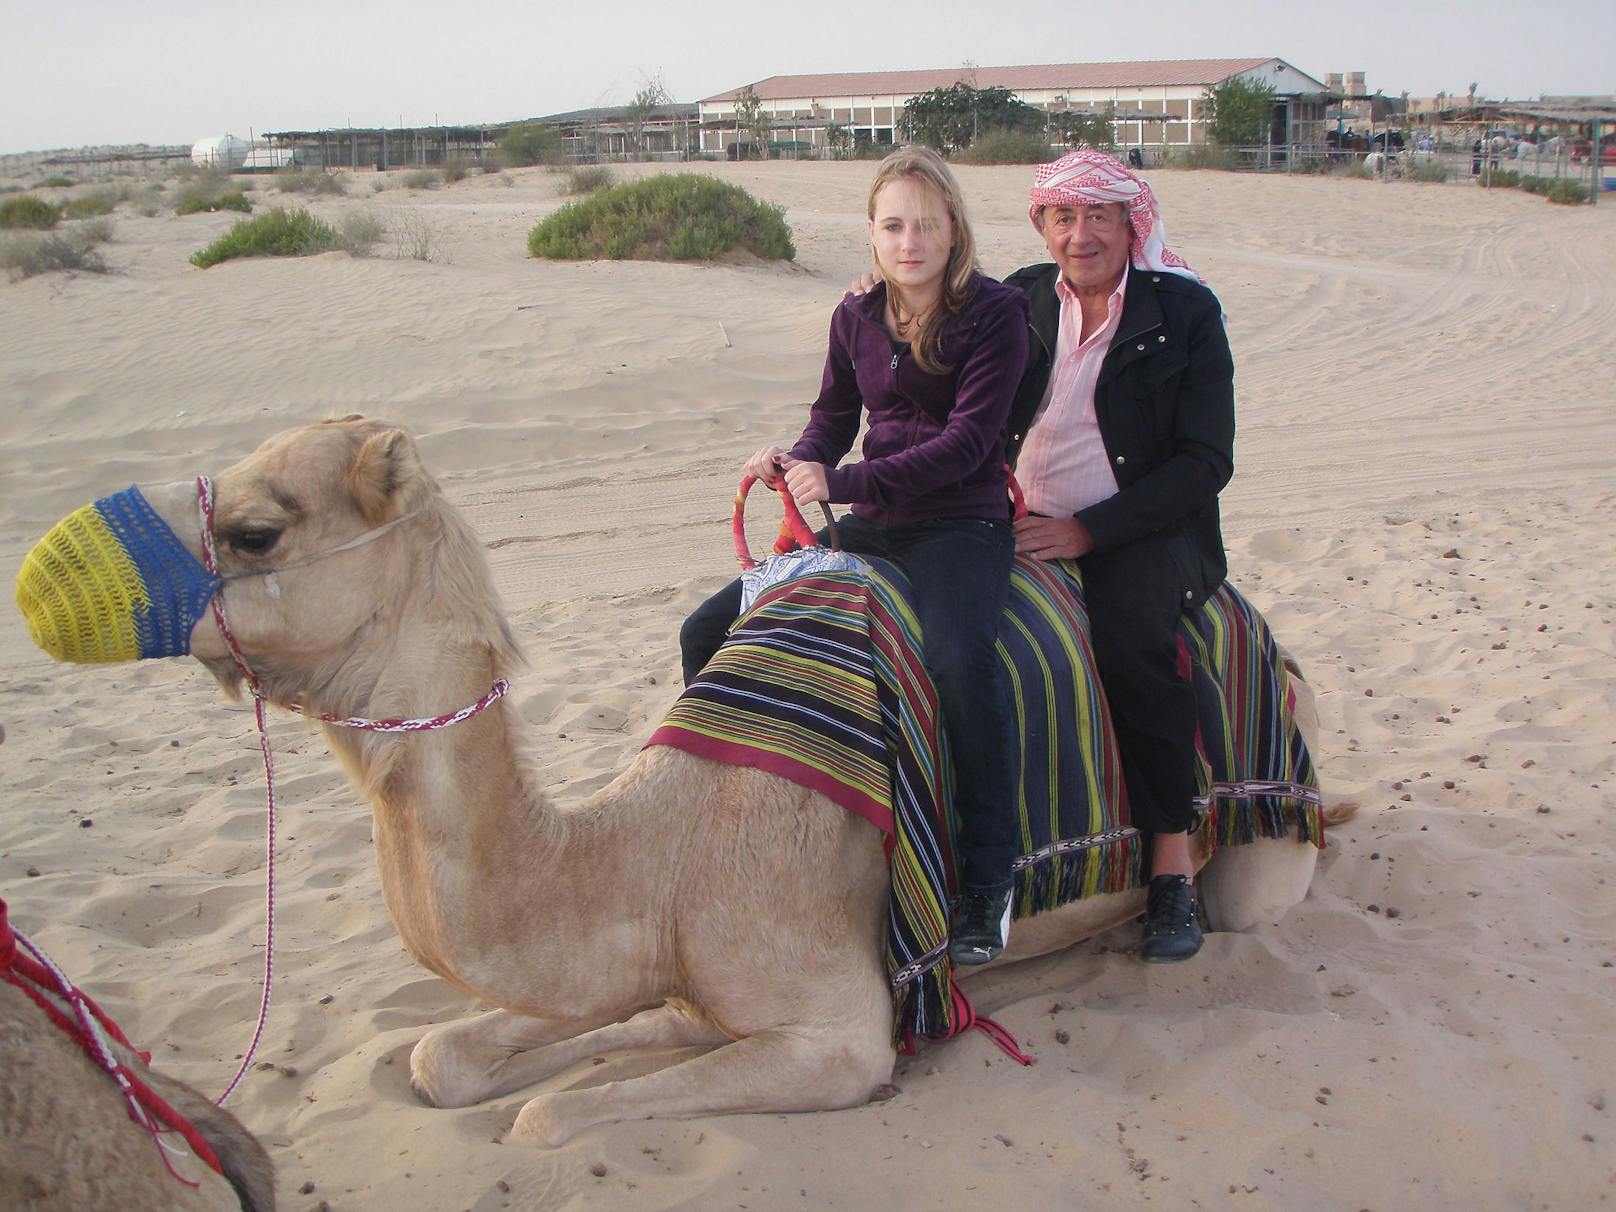 Bei jedem Spaß war Jacqueline früher dabei - hier in der Wüste von Dubai auf einem Kamel